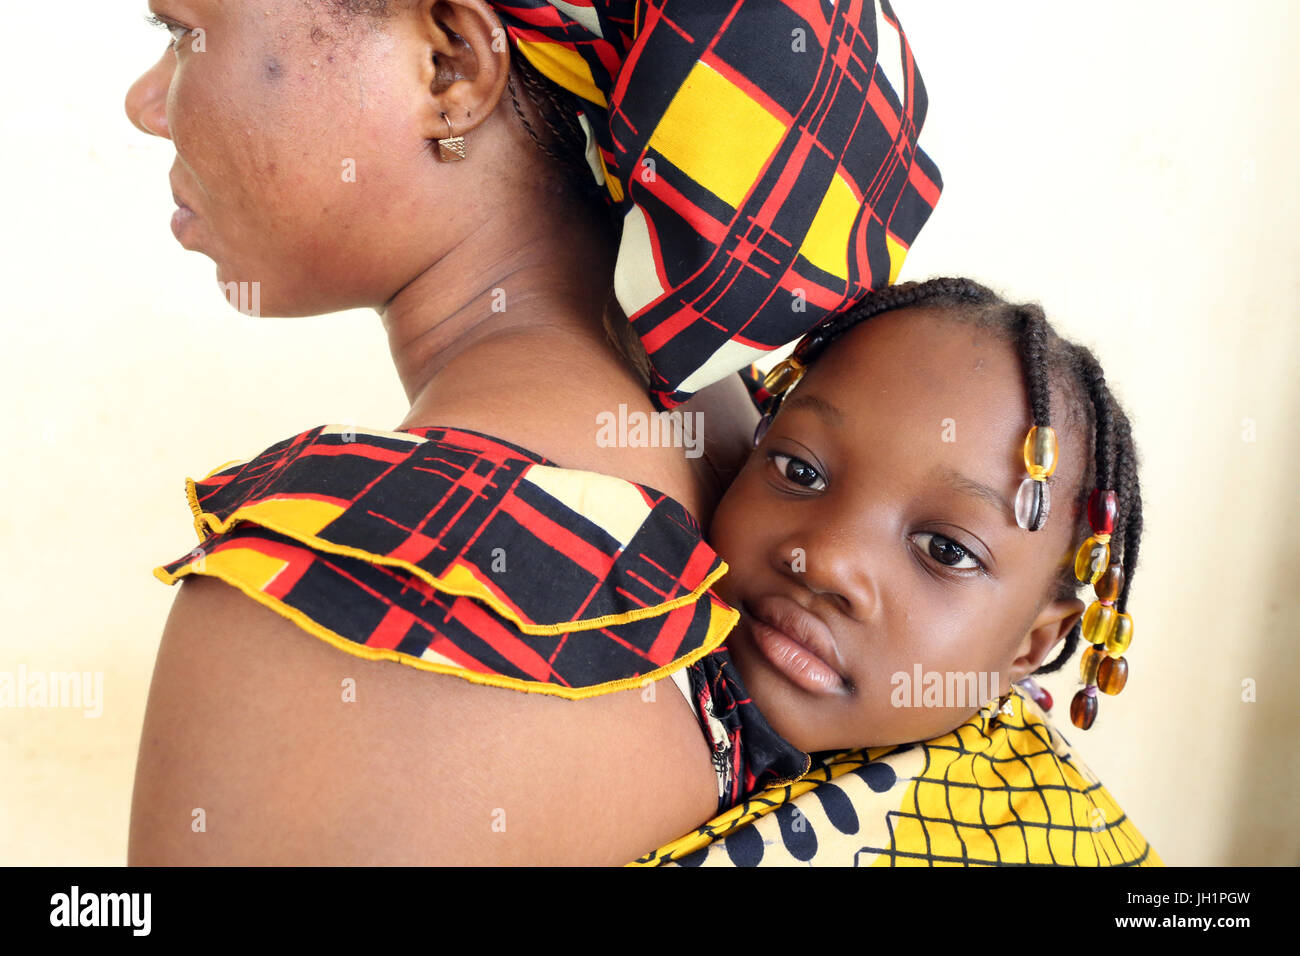 Jeune fille africaine réalisées sur le dos de sa mère. Le Togo. Banque D'Images